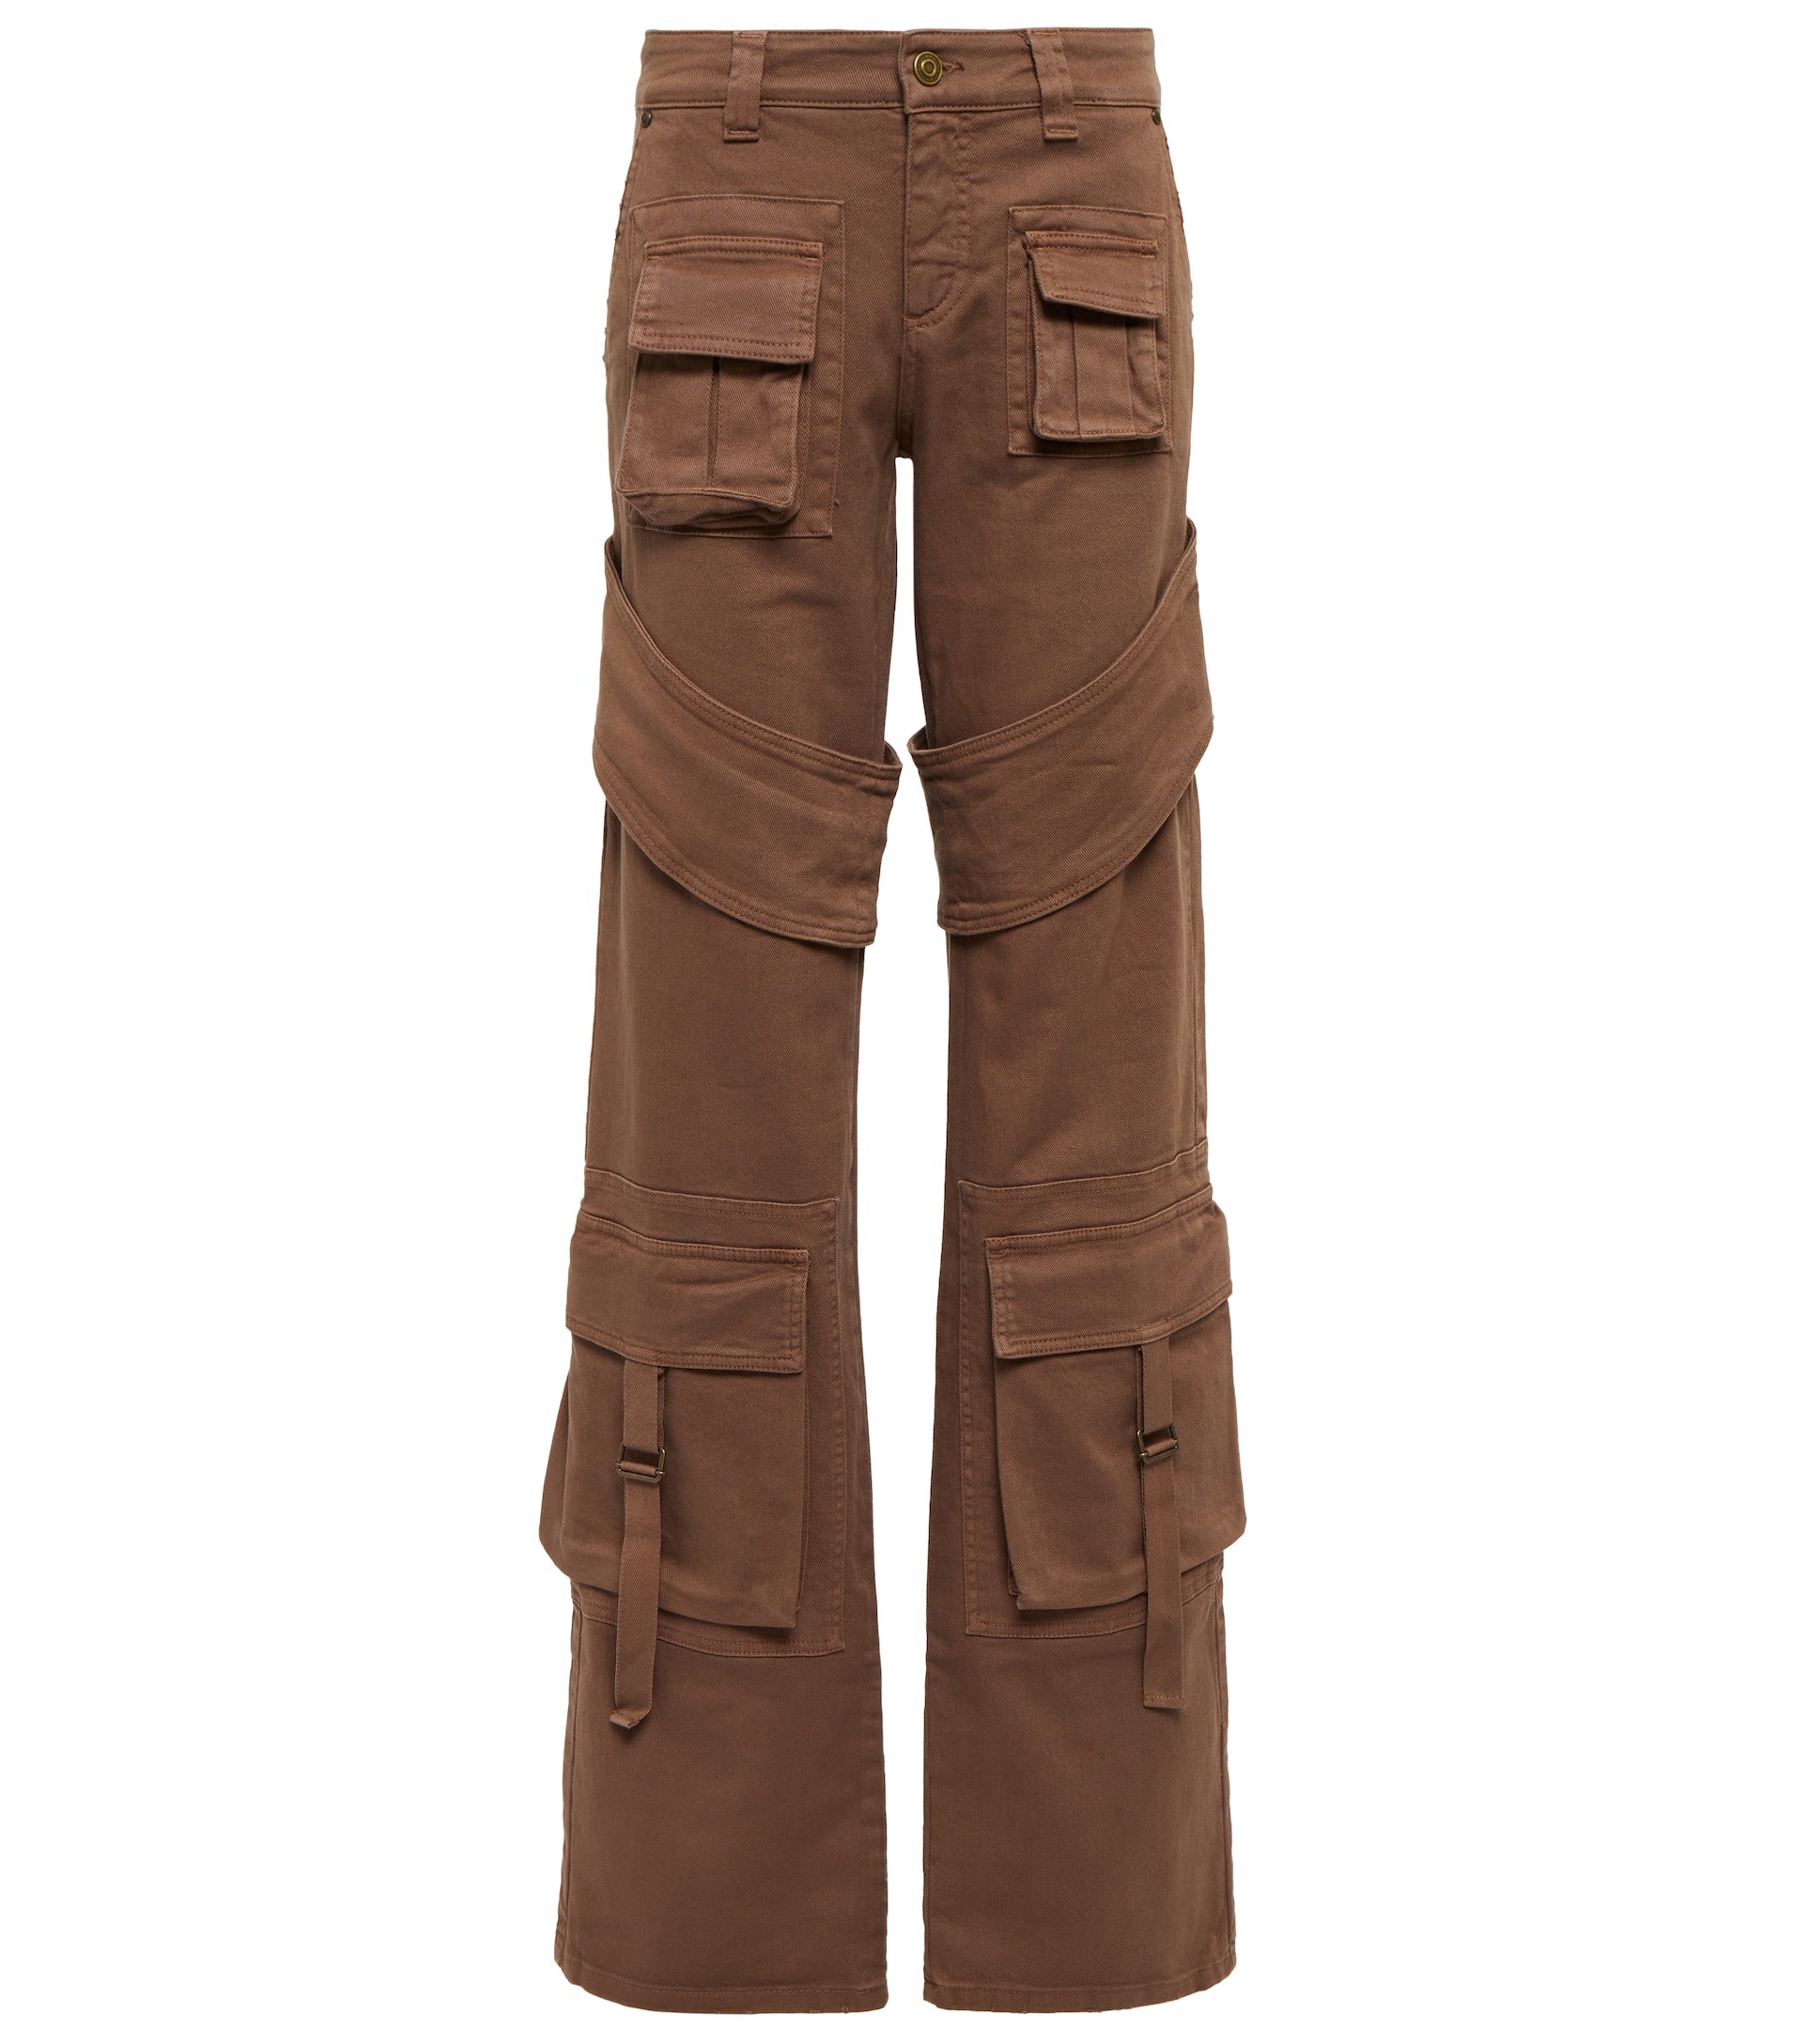 Pantalón cargo marrón, de Blumarine (551 euros).